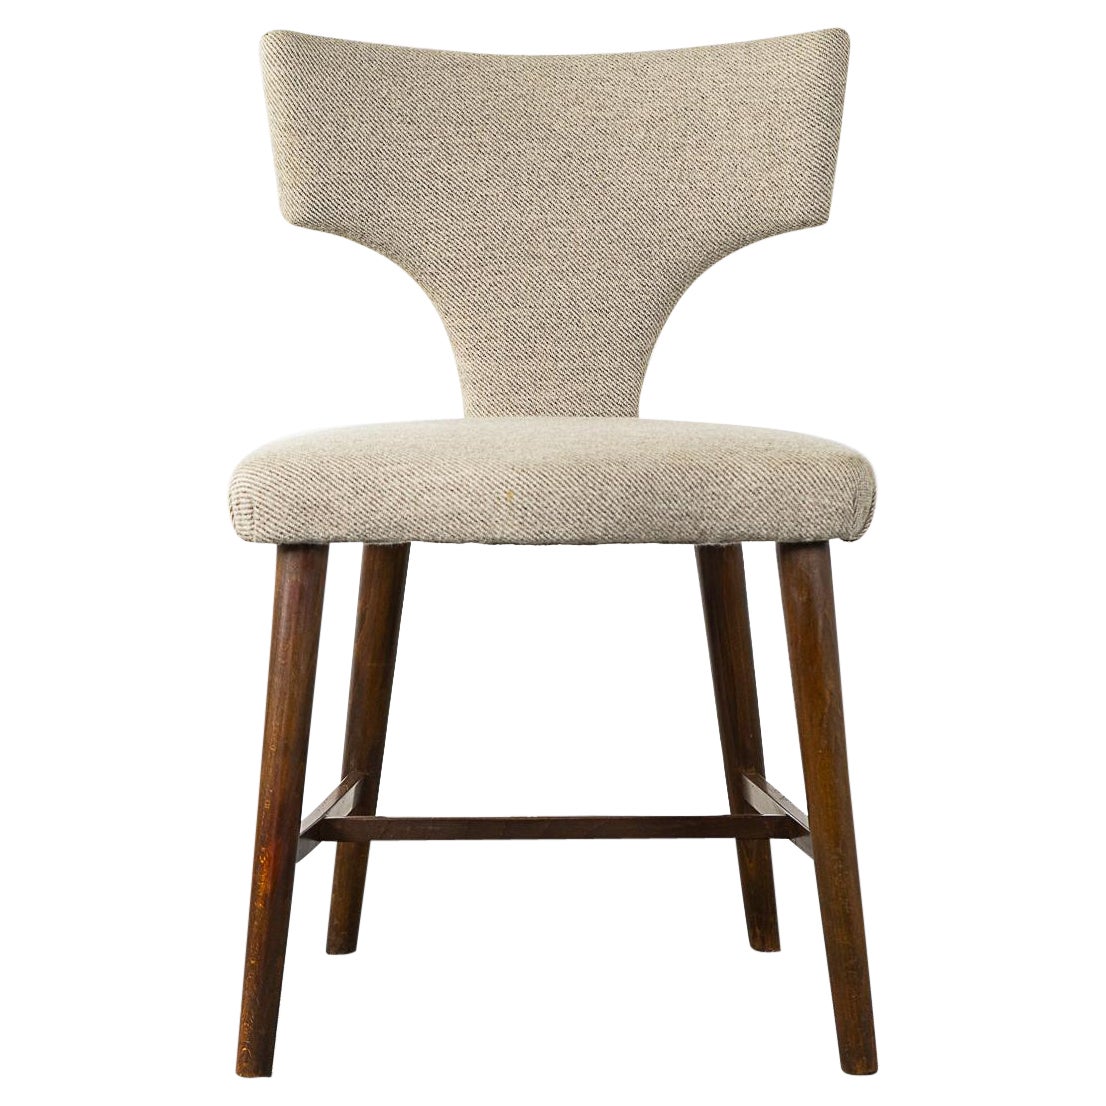  Danish Mid-Century Chair 